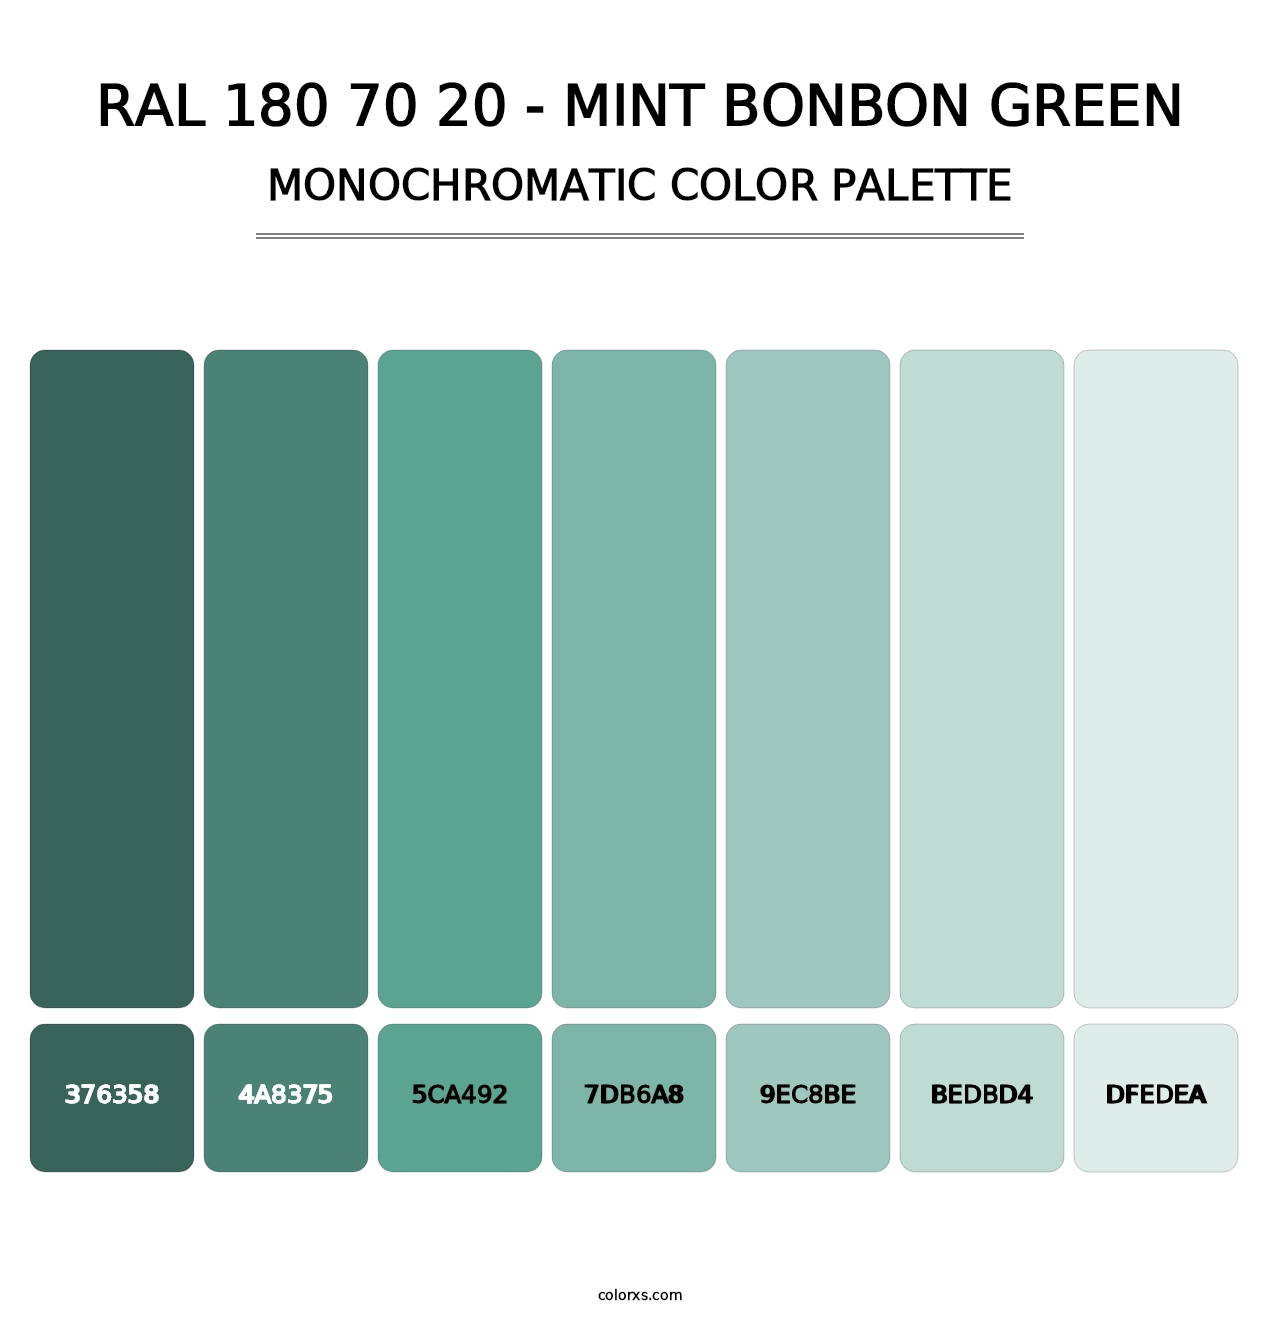 RAL 180 70 20 - Mint Bonbon Green - Monochromatic Color Palette